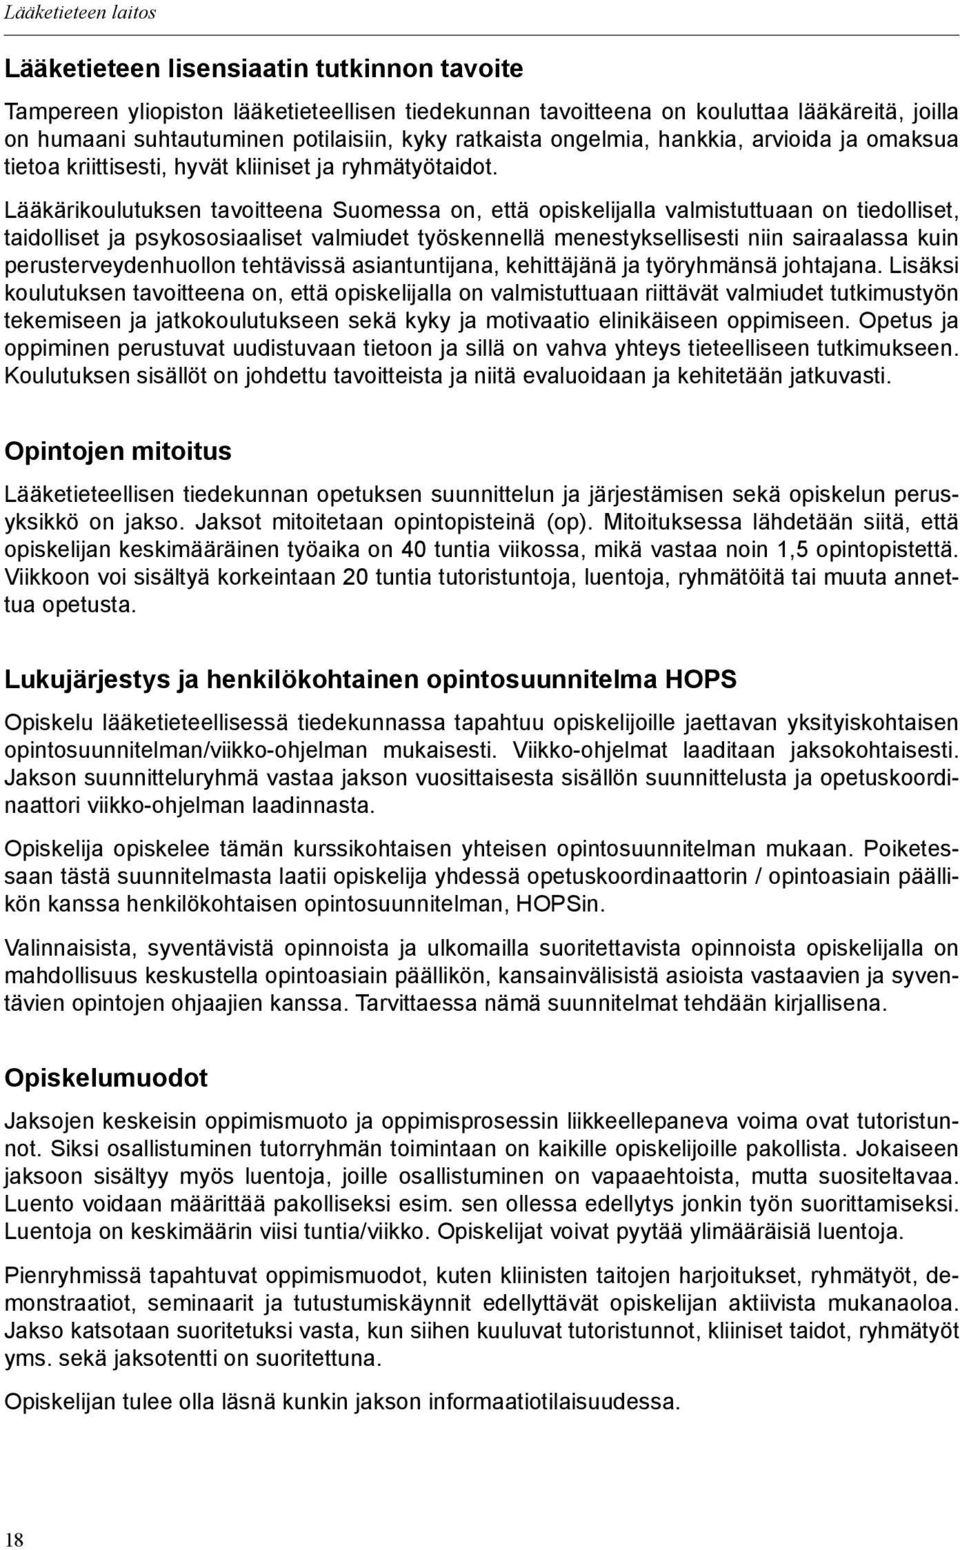 Lääkärikoulutuksen tavoitteena Suomessa on, että opiskelijalla valmistuttuaan on tiedolliset, taidolliset ja psykososiaaliset valmiudet työskennellä menestyksellisesti niin sairaalassa kuin